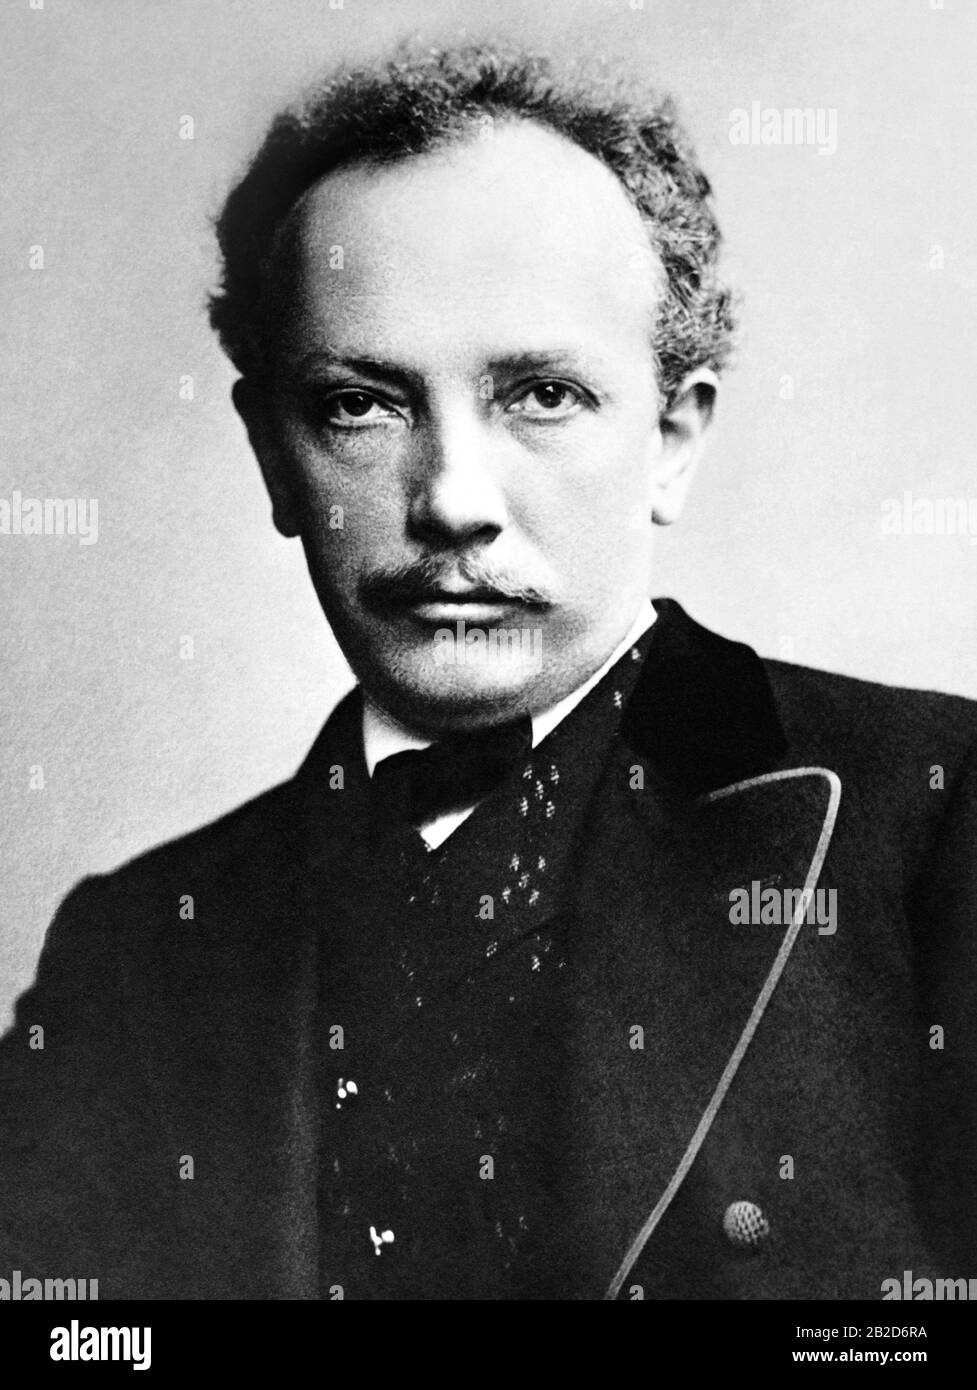 Vintage-Porträt des deutschen Komponisten und Dirigenten Richard Strauß (1864 - 1949). Foto ca. 1905 von Bain News Service. Stockfoto